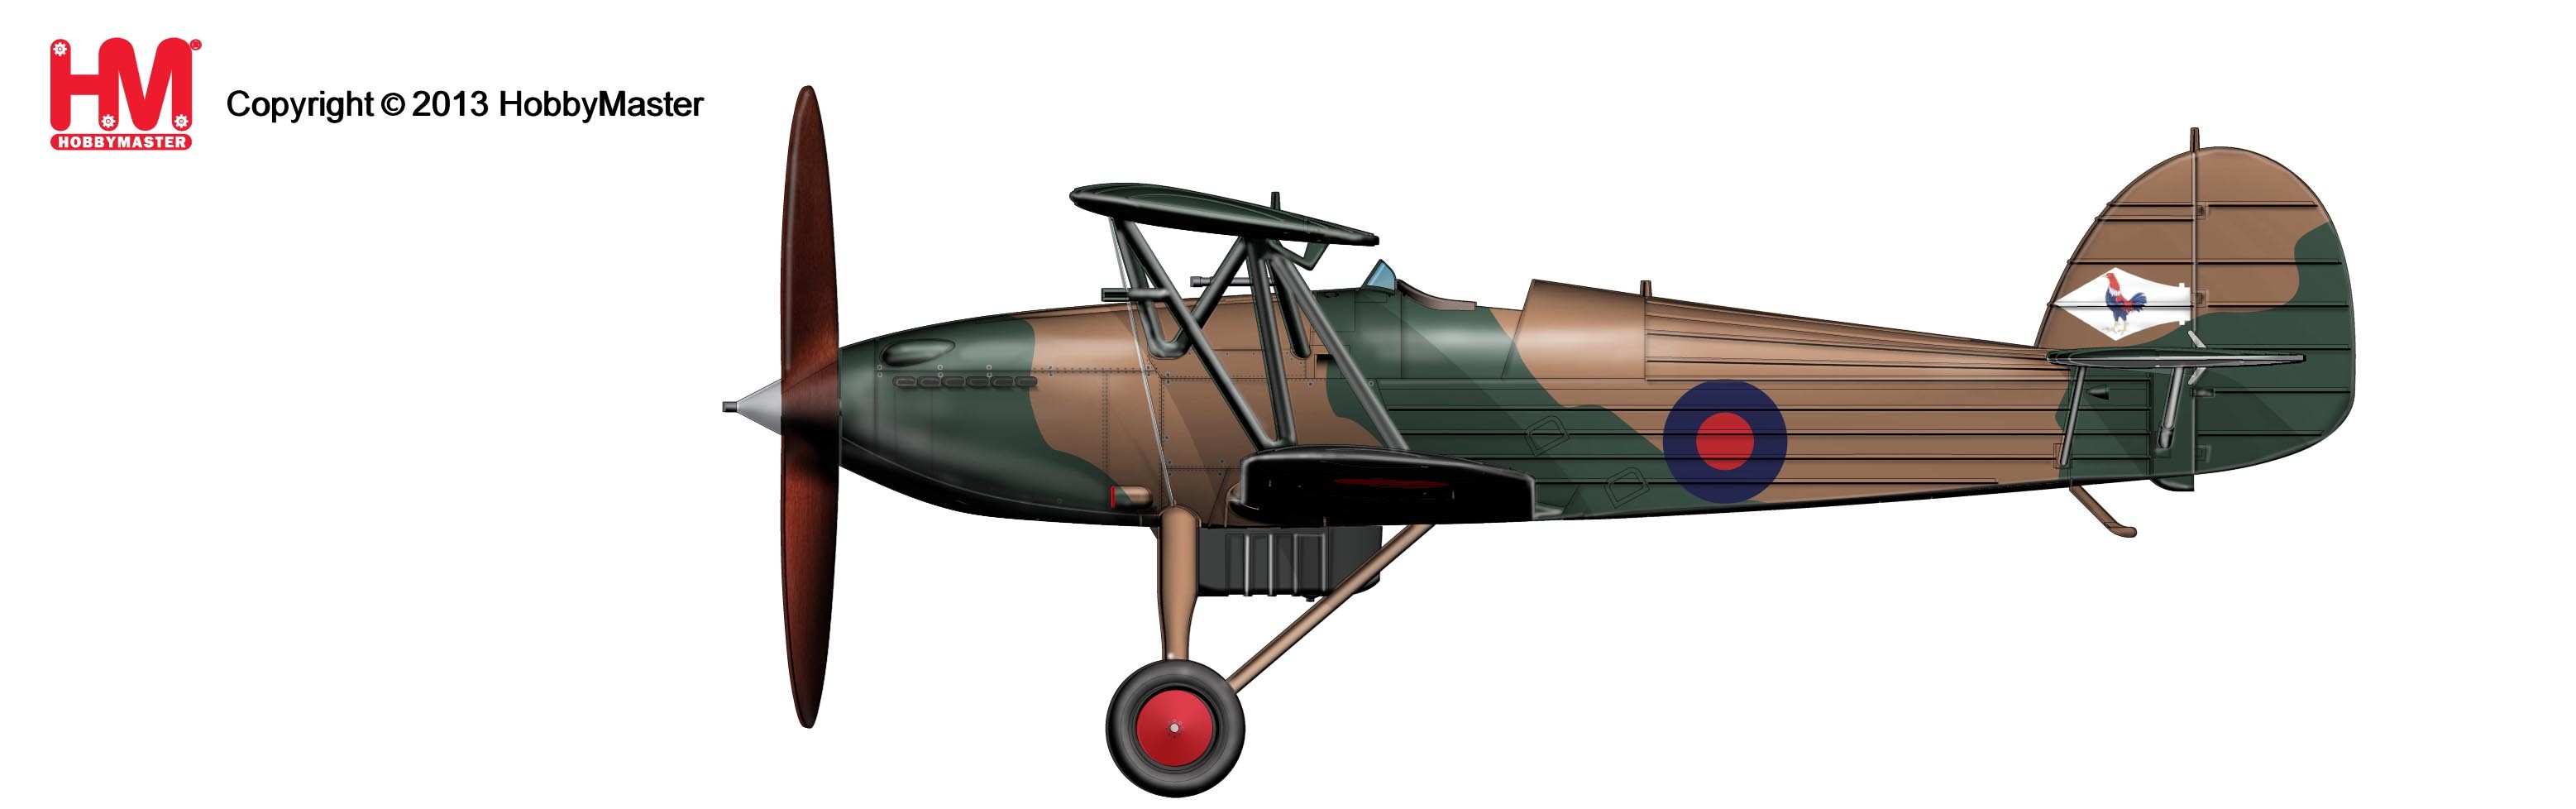 Miniature d'avion Die Cast au 1/48 Hawker Fury I1/48 - Scientific-MHD